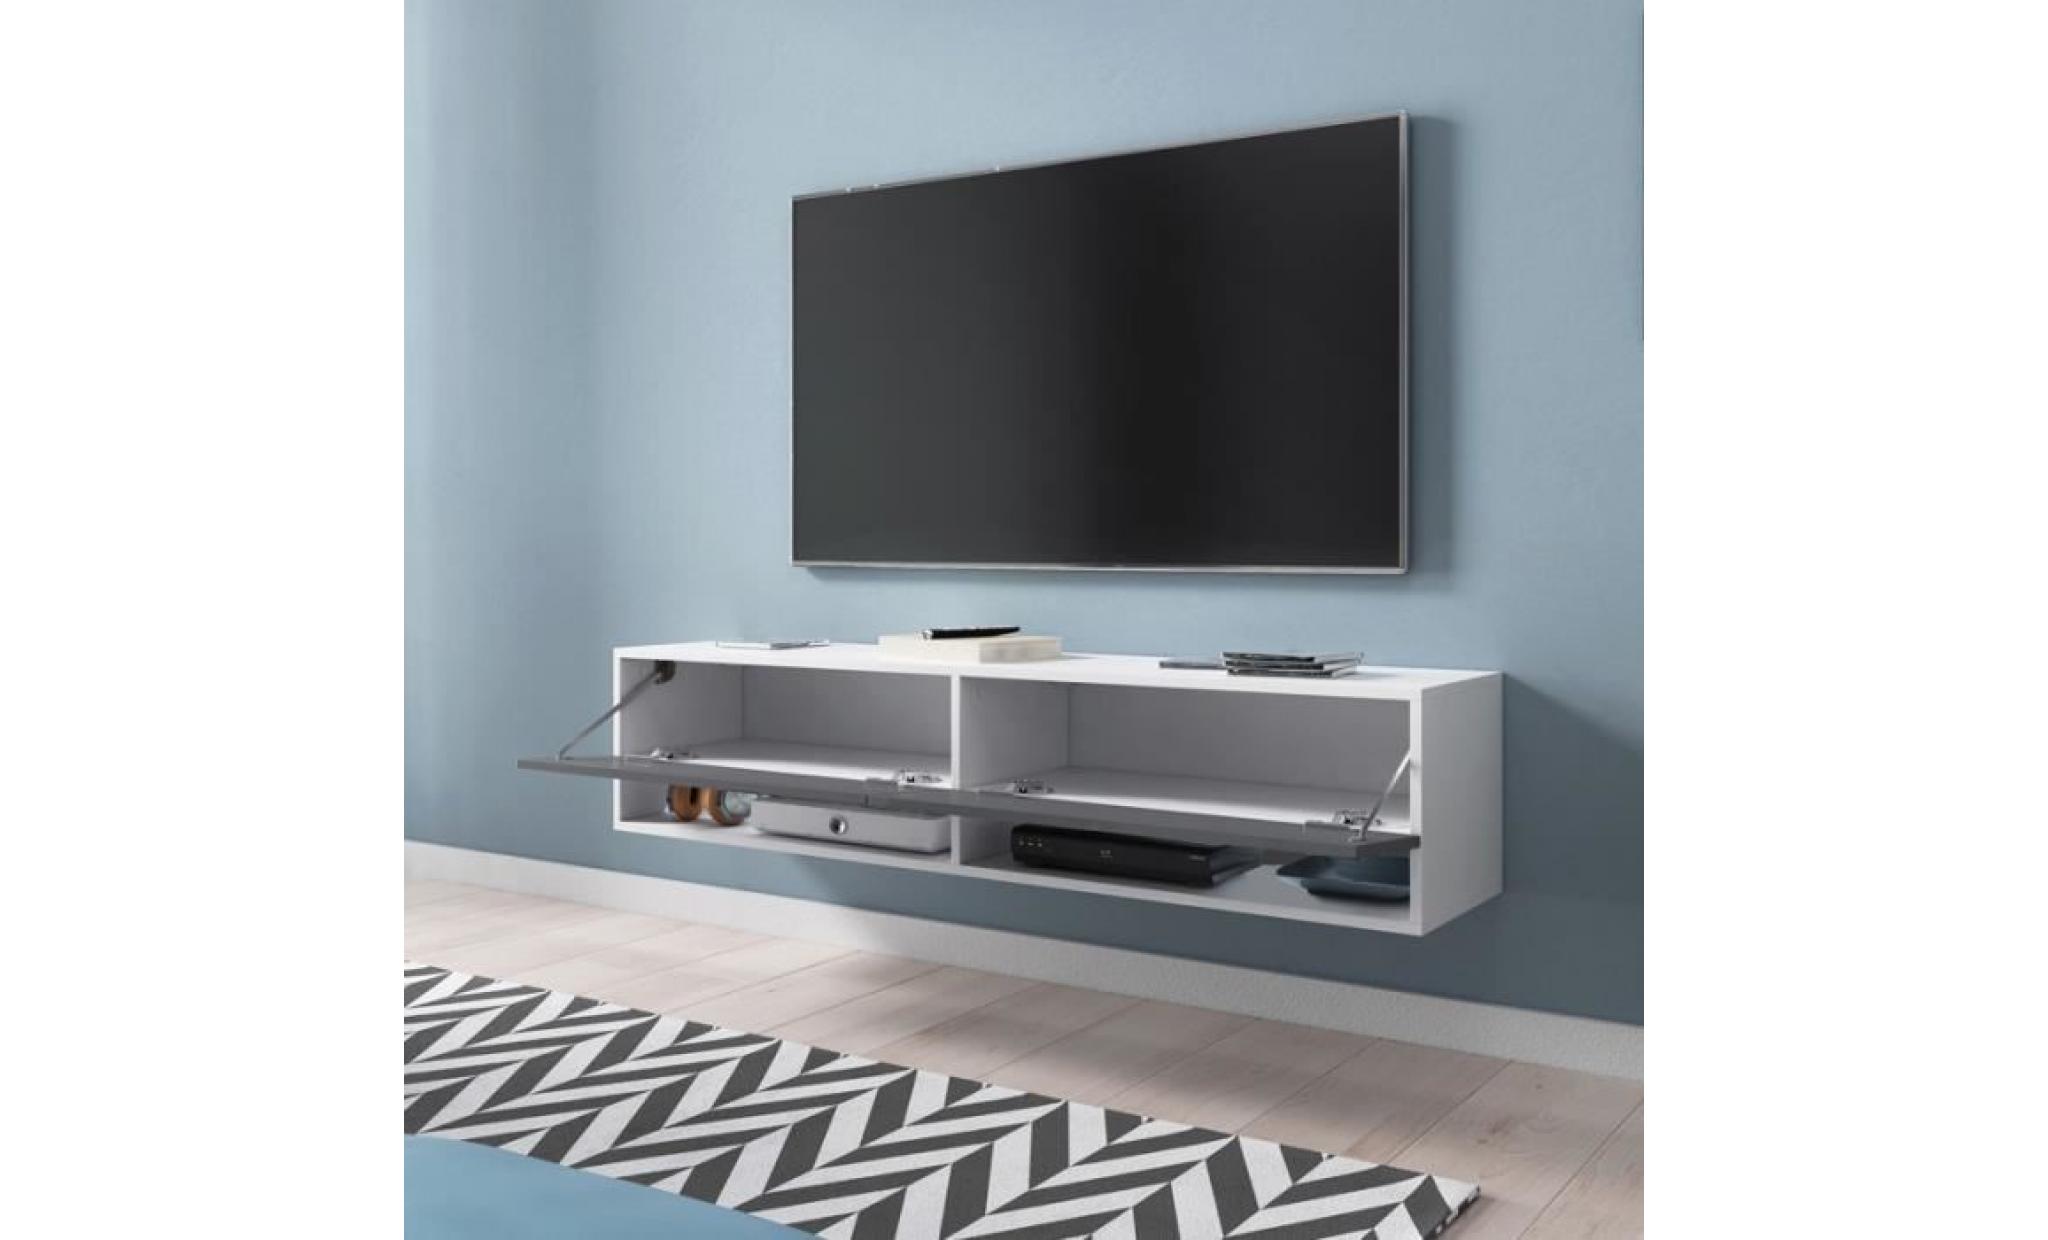 meuble tv / meuble de salon   wander   140 cm   blanc mat / gris brillant   sans led   2 niches ouvertes   style industriel pas cher